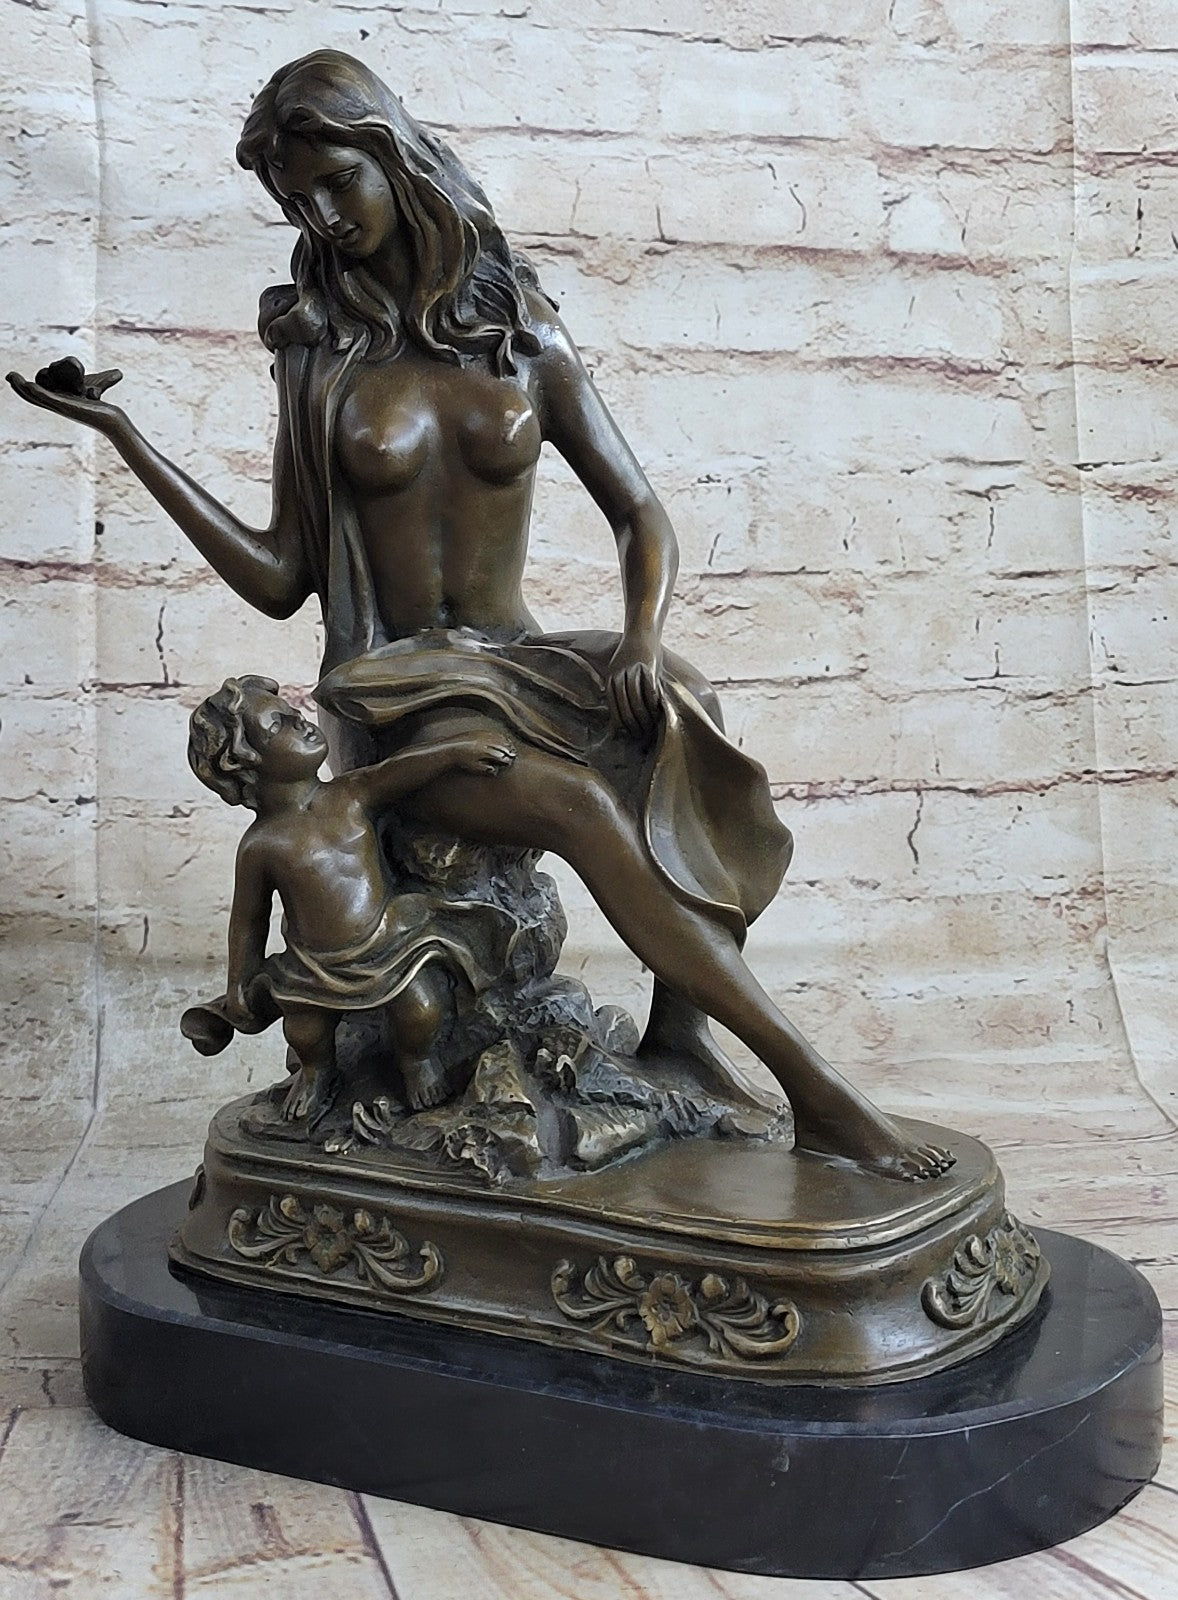 Original Milo Nude Abstract Female Bronze Sculpture Sexy Figurine Hotcast